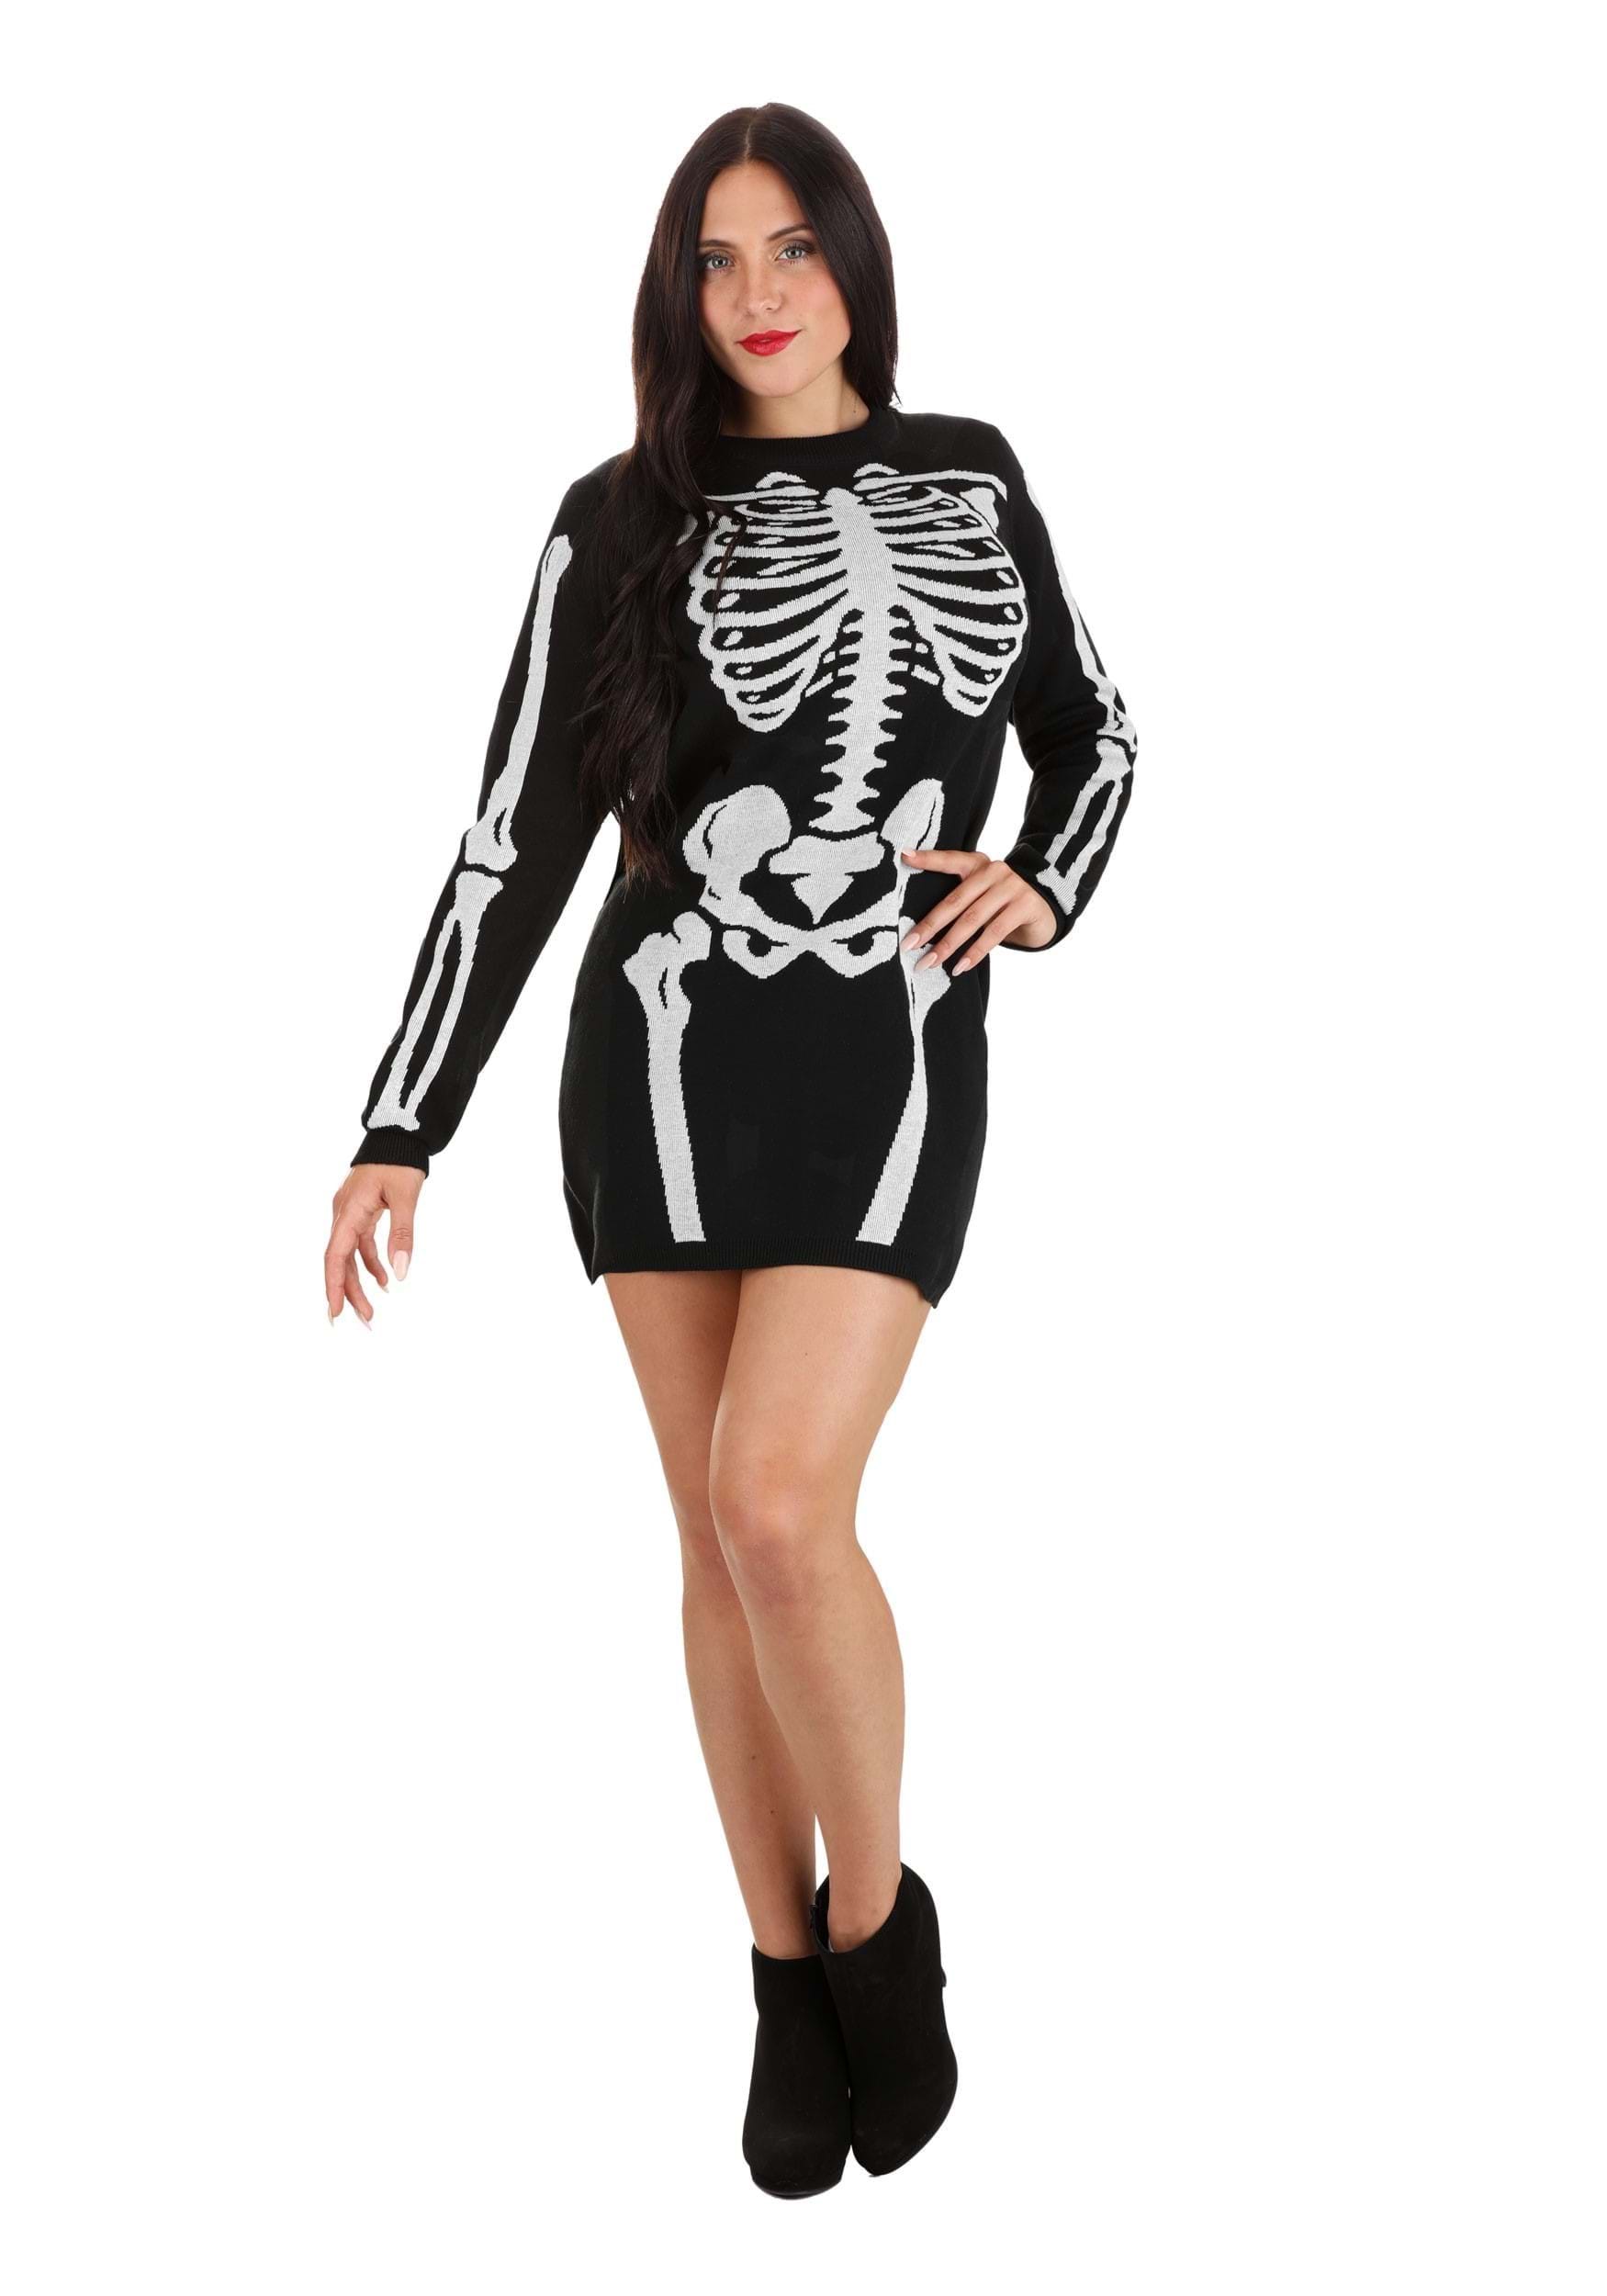 Skeleton Sweater Dress For Women